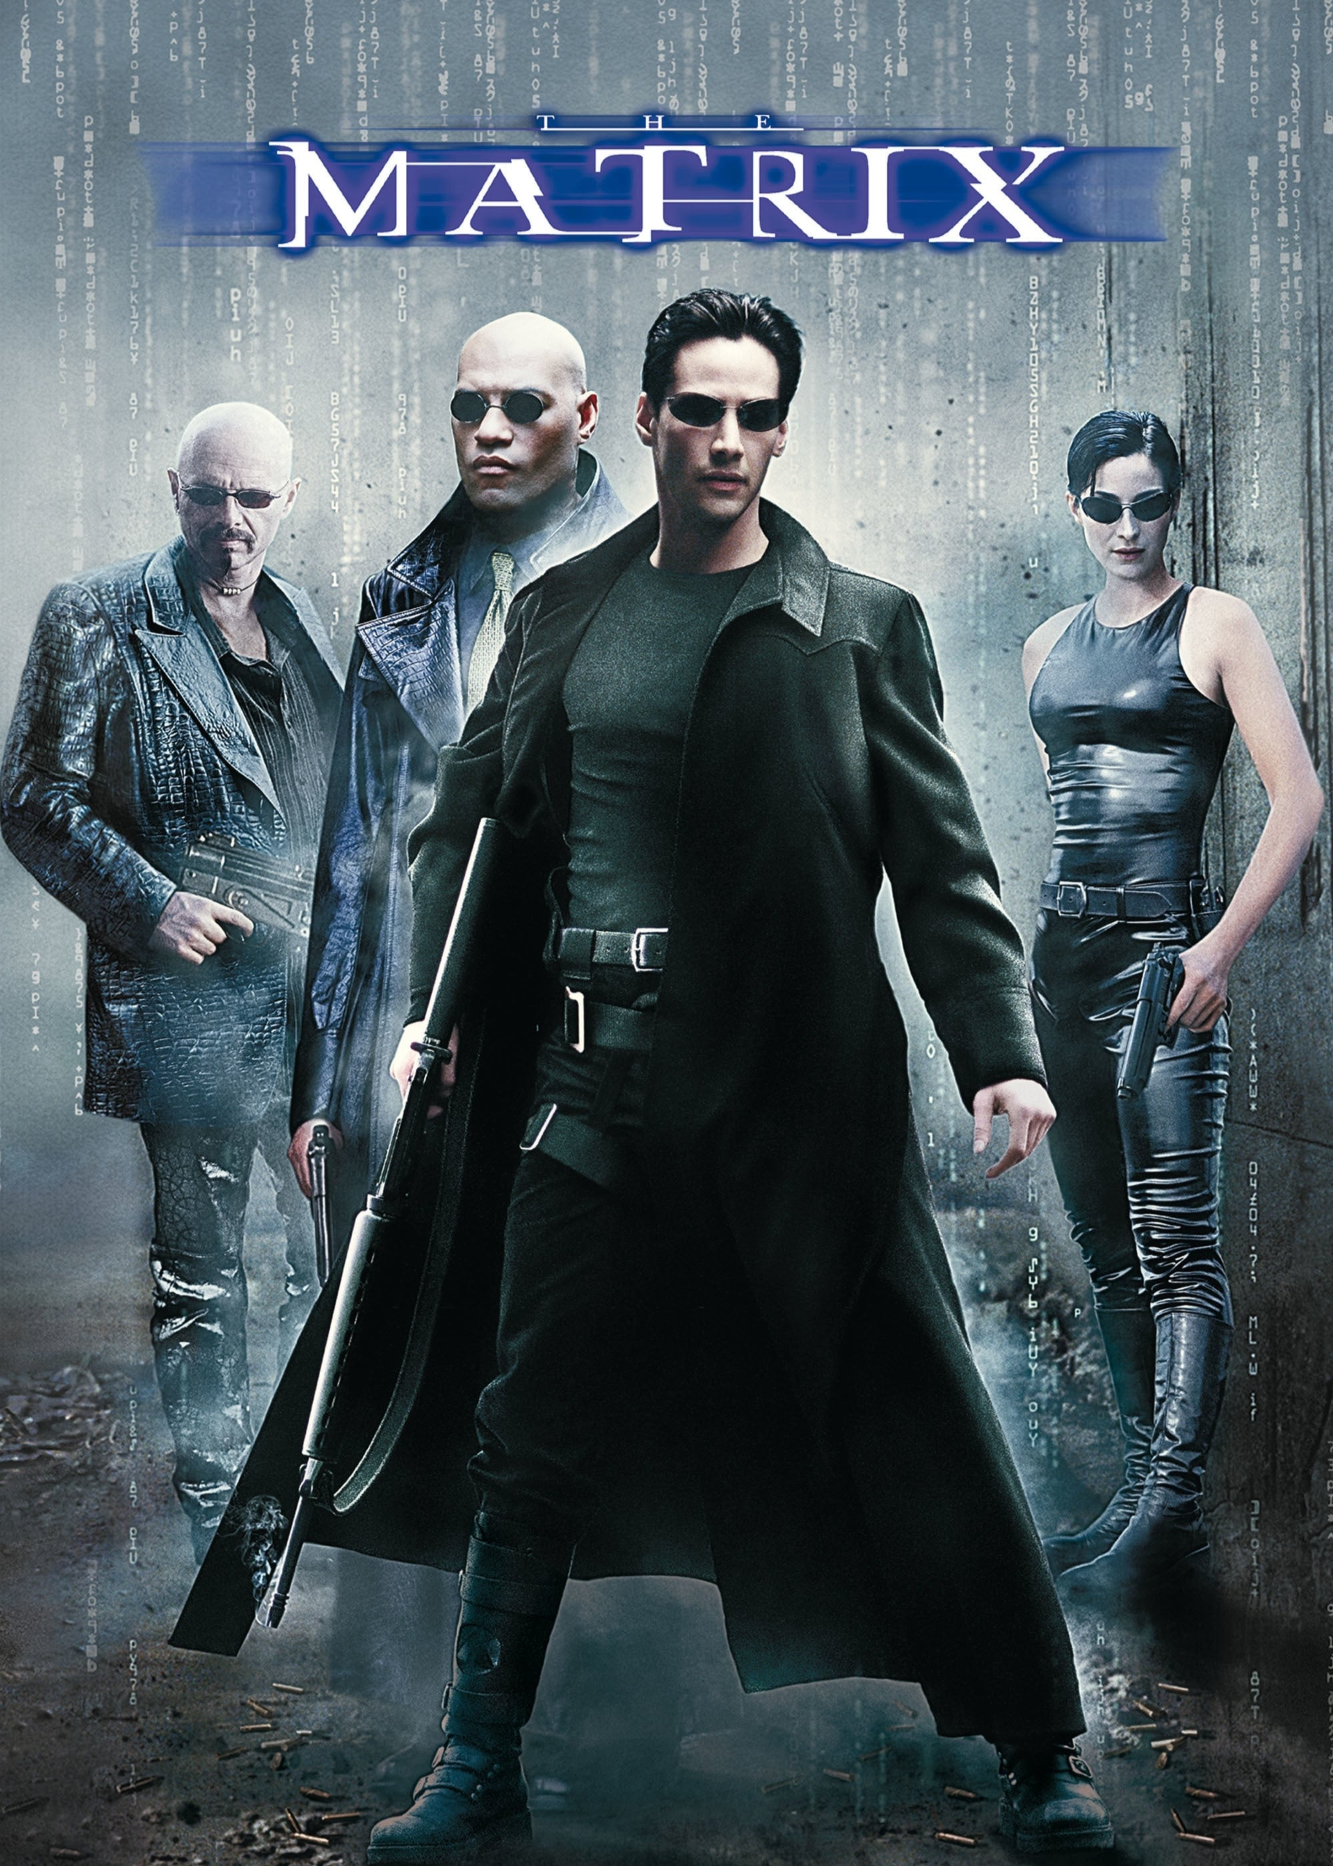 Xem Phim Ma Trận (The Matrix)